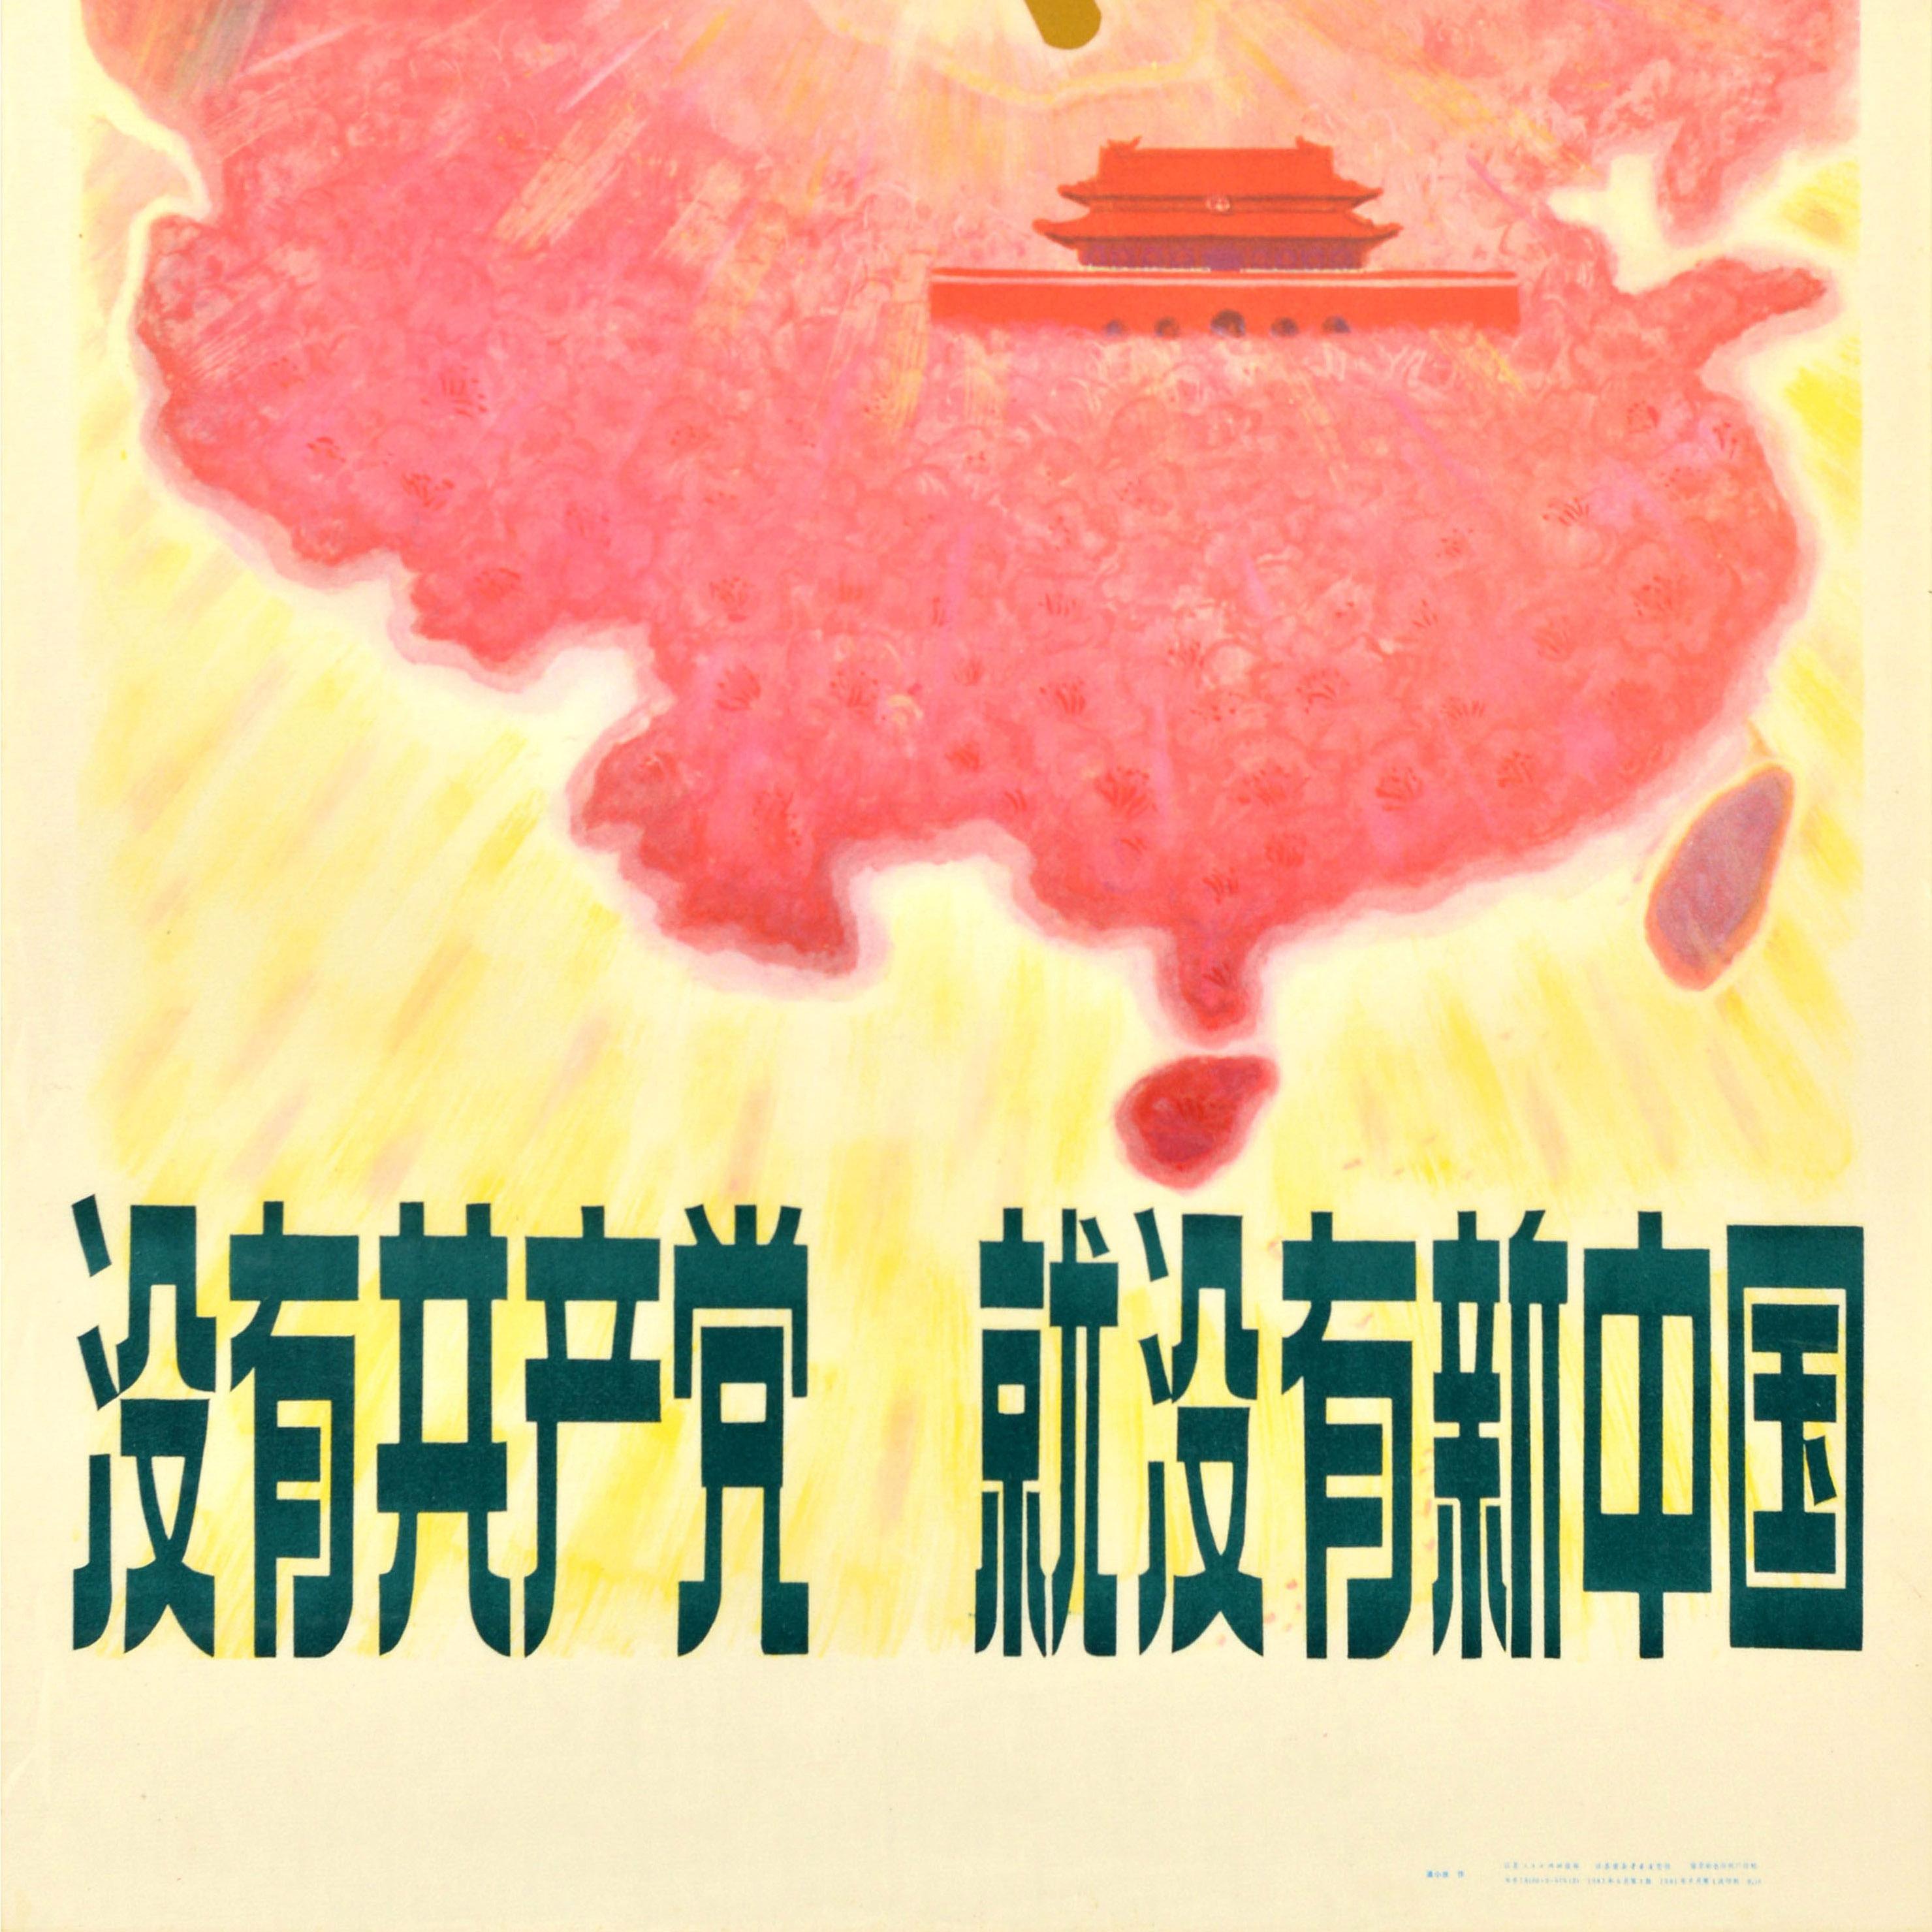 Originales Vintage-Propagandaplakat der Kommunistischen Partei Chinas zum 60. Jahrestag der Parteigründung: 1921-1981 Ohne die Kommunistische Partei gäbe es kein neues China / 没有共产党 就没有新中国 - mit einer Illustration eines Regenbogens über einem